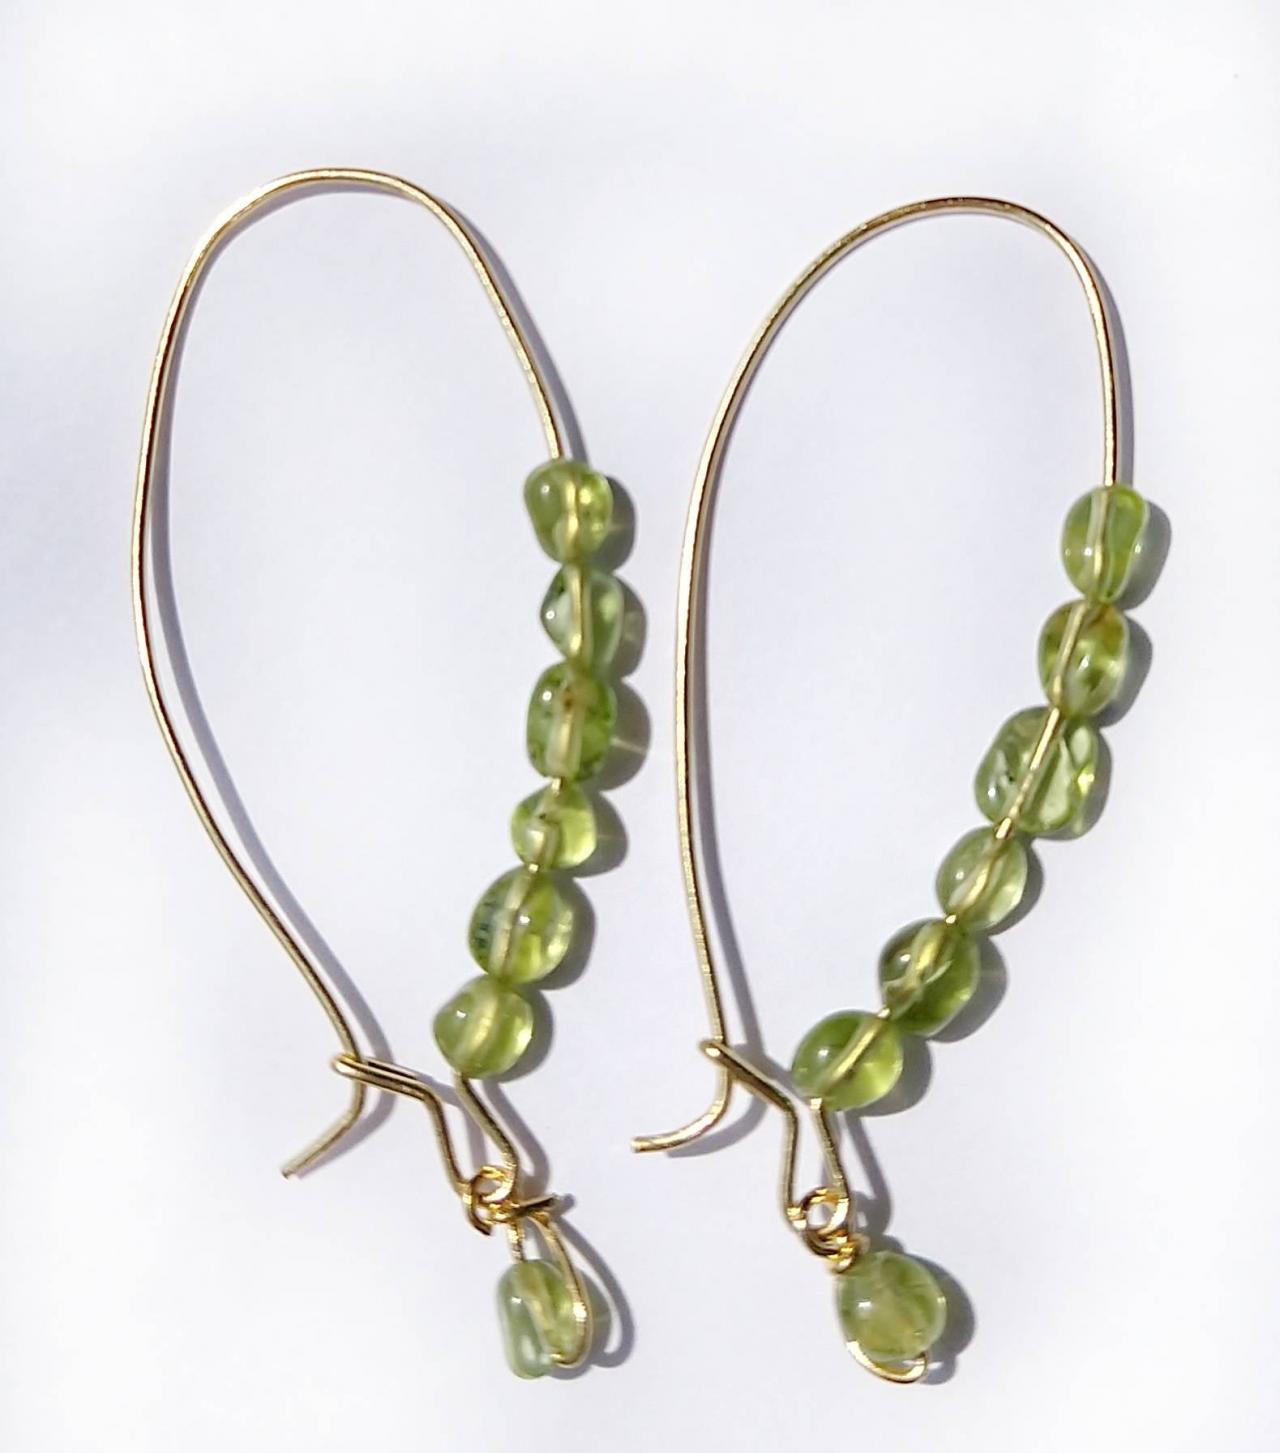 Peridot Earwires Peridot Earrings Peridot Jewelry Green Earrings Green Jewelry August Birthstone Earrings August Birthday Gift